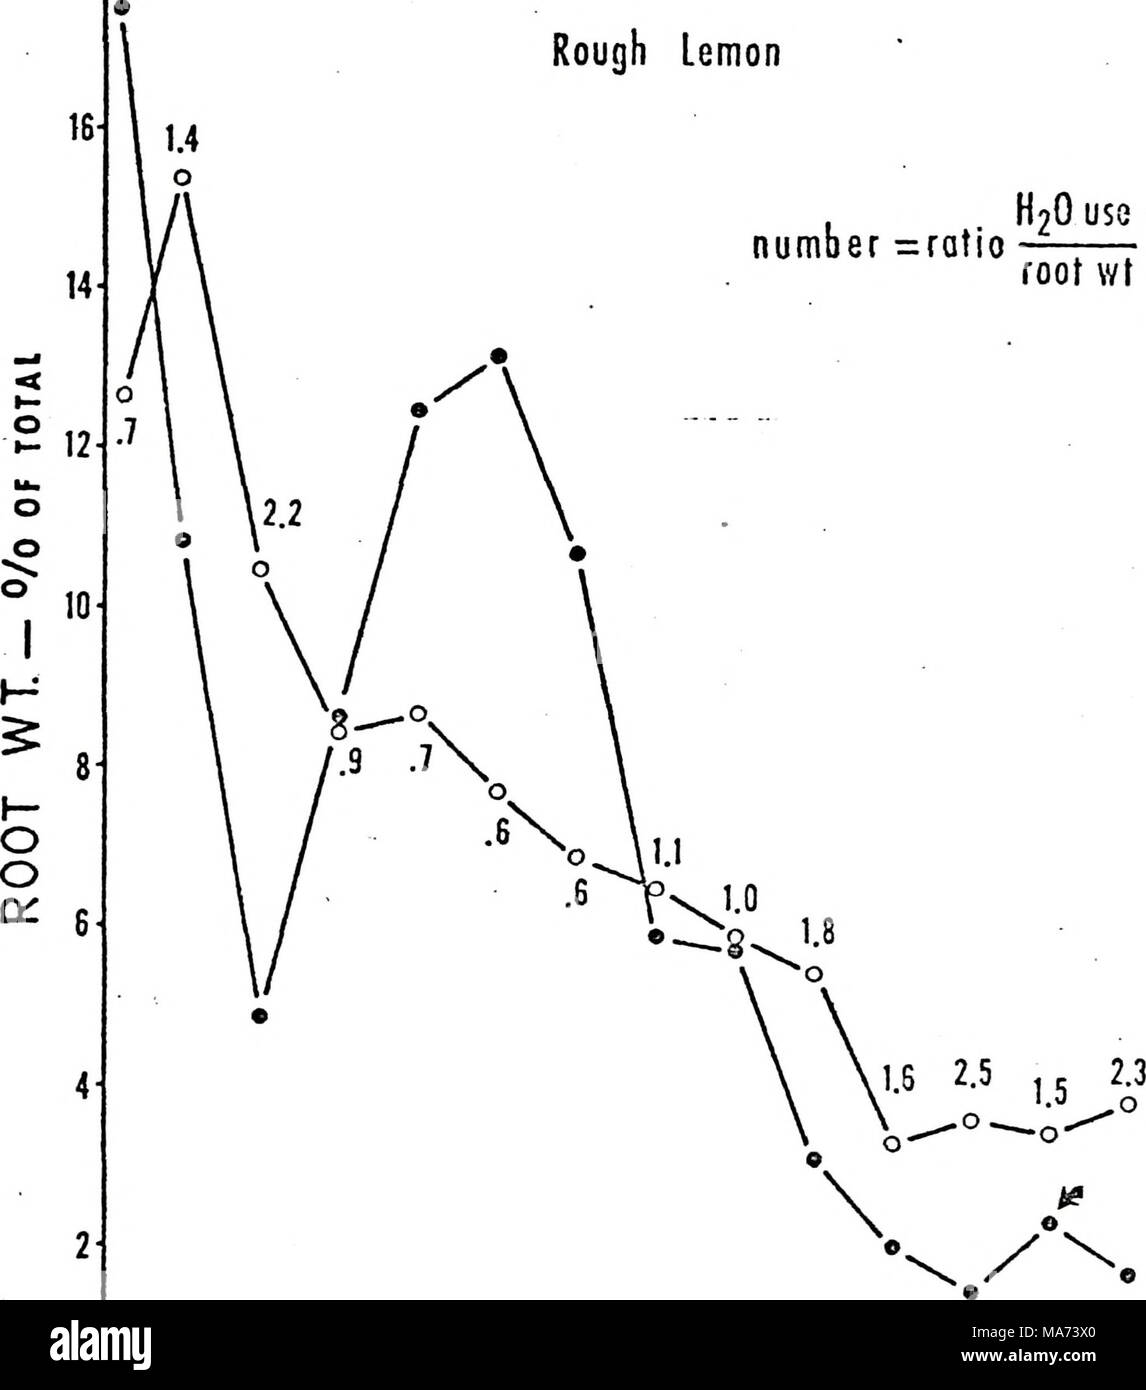 . Effetto di profondità di radicamento di agrumi sulla struttura di radice e di assorbimento di acqua. . 6 9 12 15 18 21 24 27 30 33 35 39 profondità- cmxio-'- 16 2 14 £ o "s o o 10 8 uj  J 0  LU 6 Q O 4 O CO Fig. 15. Il confronto della media di acqua del terreno utilizzato per la distribuzione di radice di 'Orlando' tangelo su alberi di limone grezzo rizomi, durante periodi selezionati a partire dal mese di aprile, 1973 ad aprile 1974. Profondità al sottosuolo orizzonte di argilla è indicata da una freccia. Foto Stock